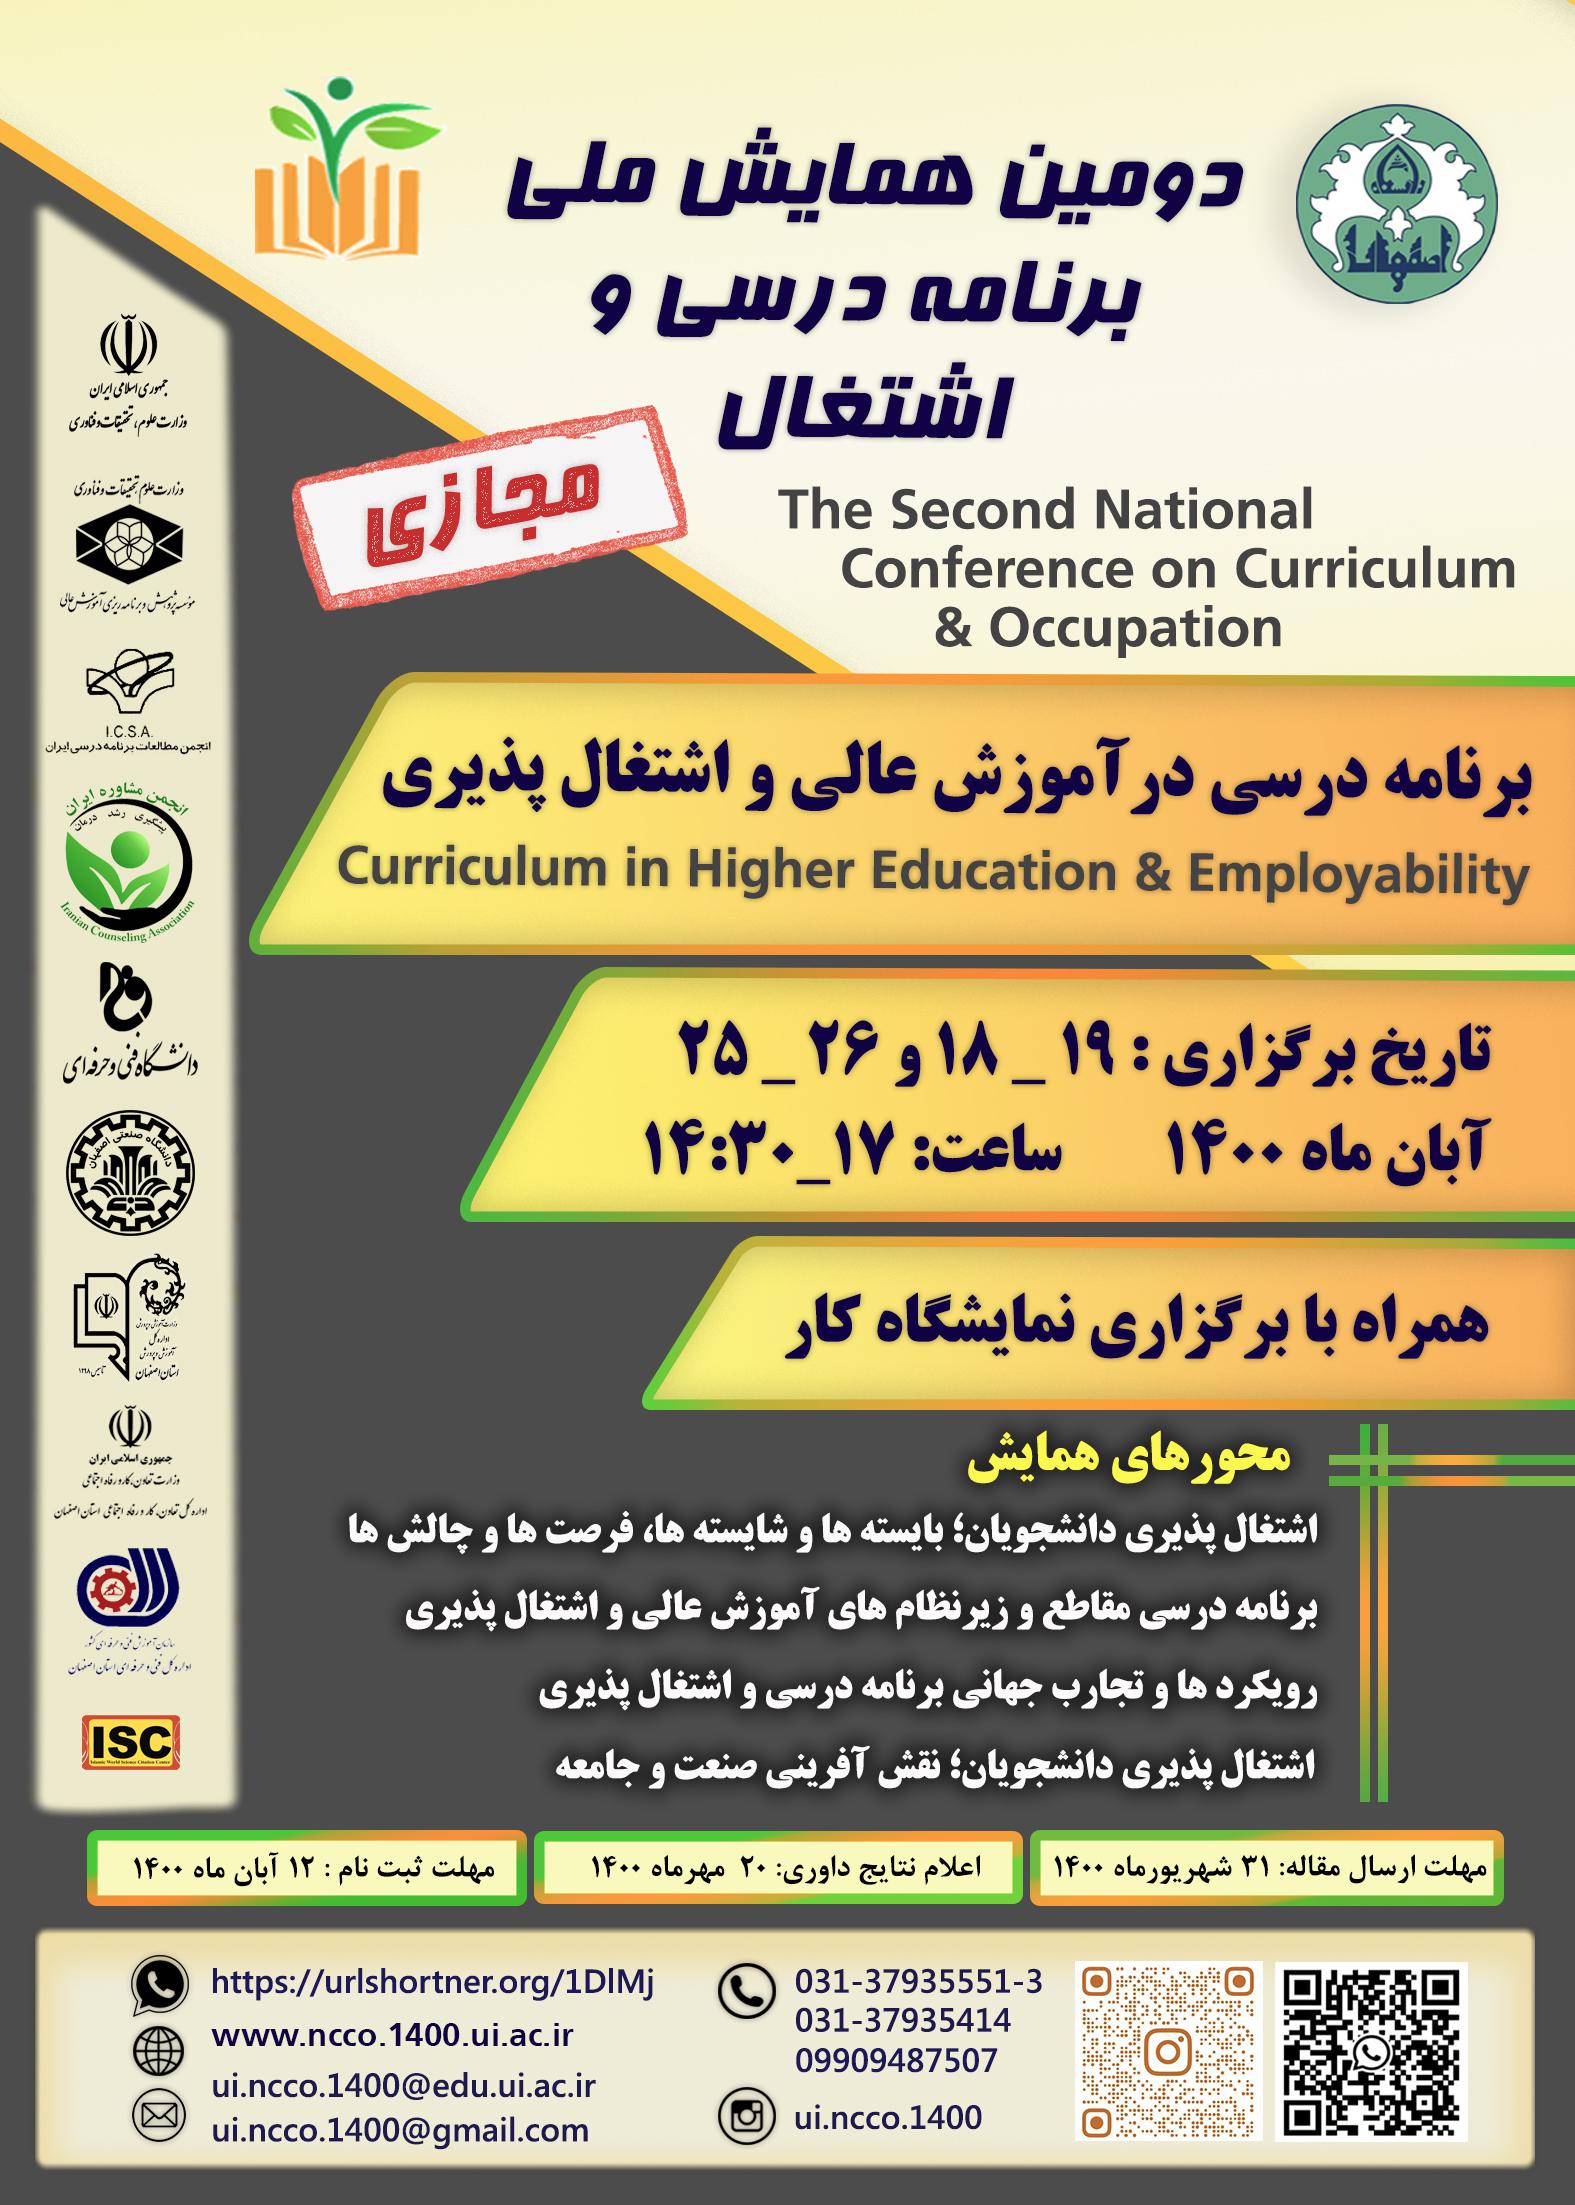 برگزاری همایش ملی برنامه درسی و اشتغال در اصفهان